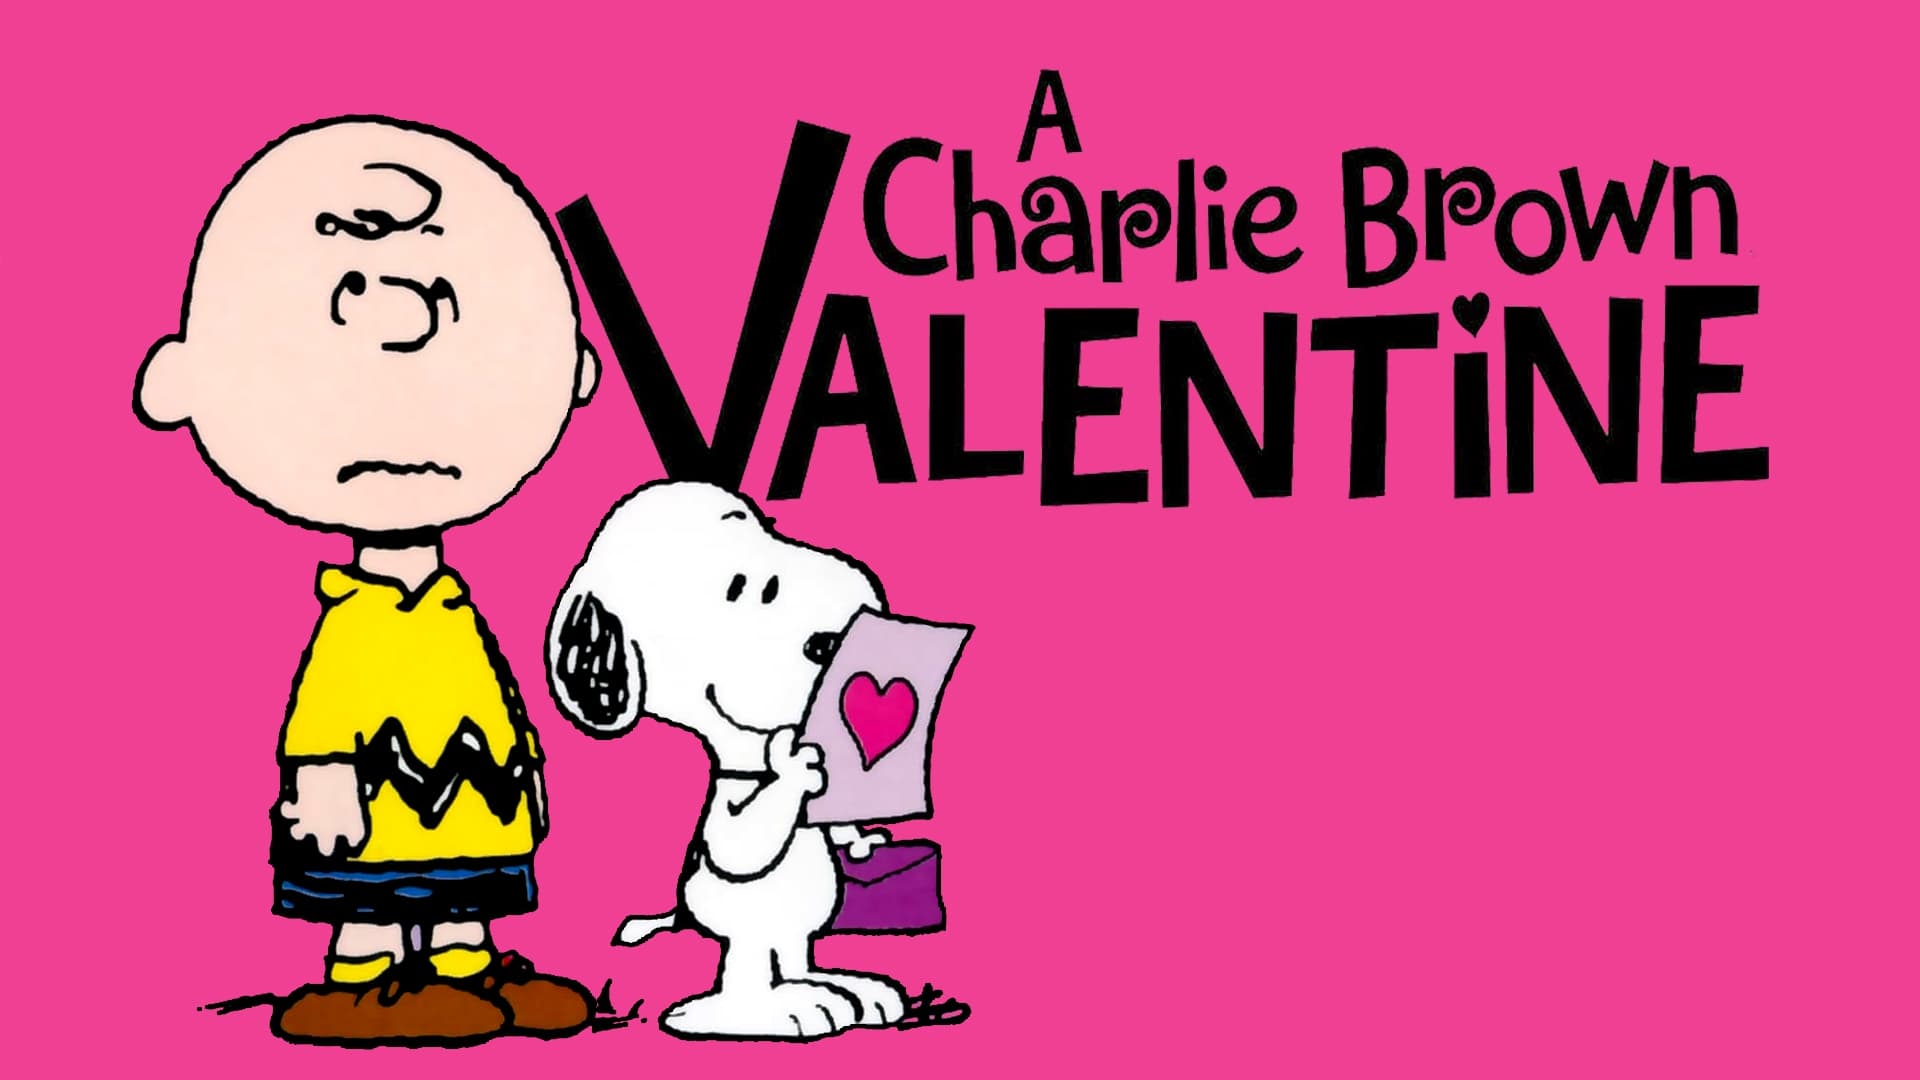 Watch A Charlie Brown Valentine (2002) Full Movie Online